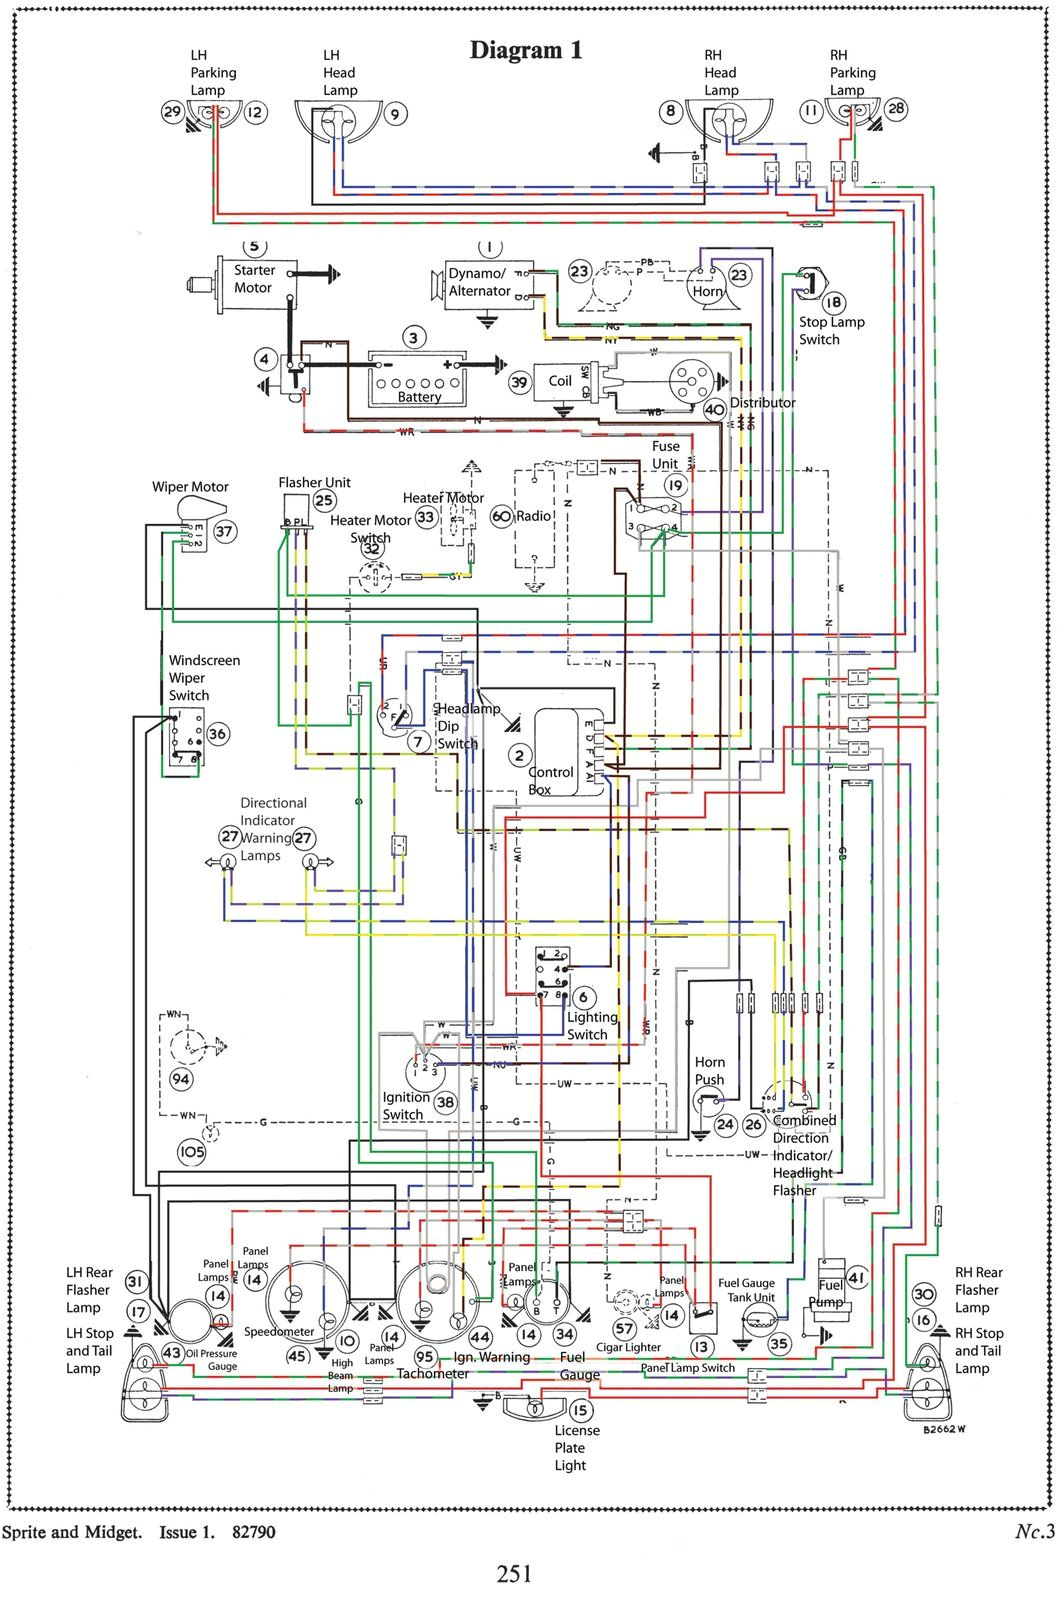 mk3 sprite wiring diagram austin healey sprite mg midget austin healey bj7 wiring diagram austin healey wiring diagrams